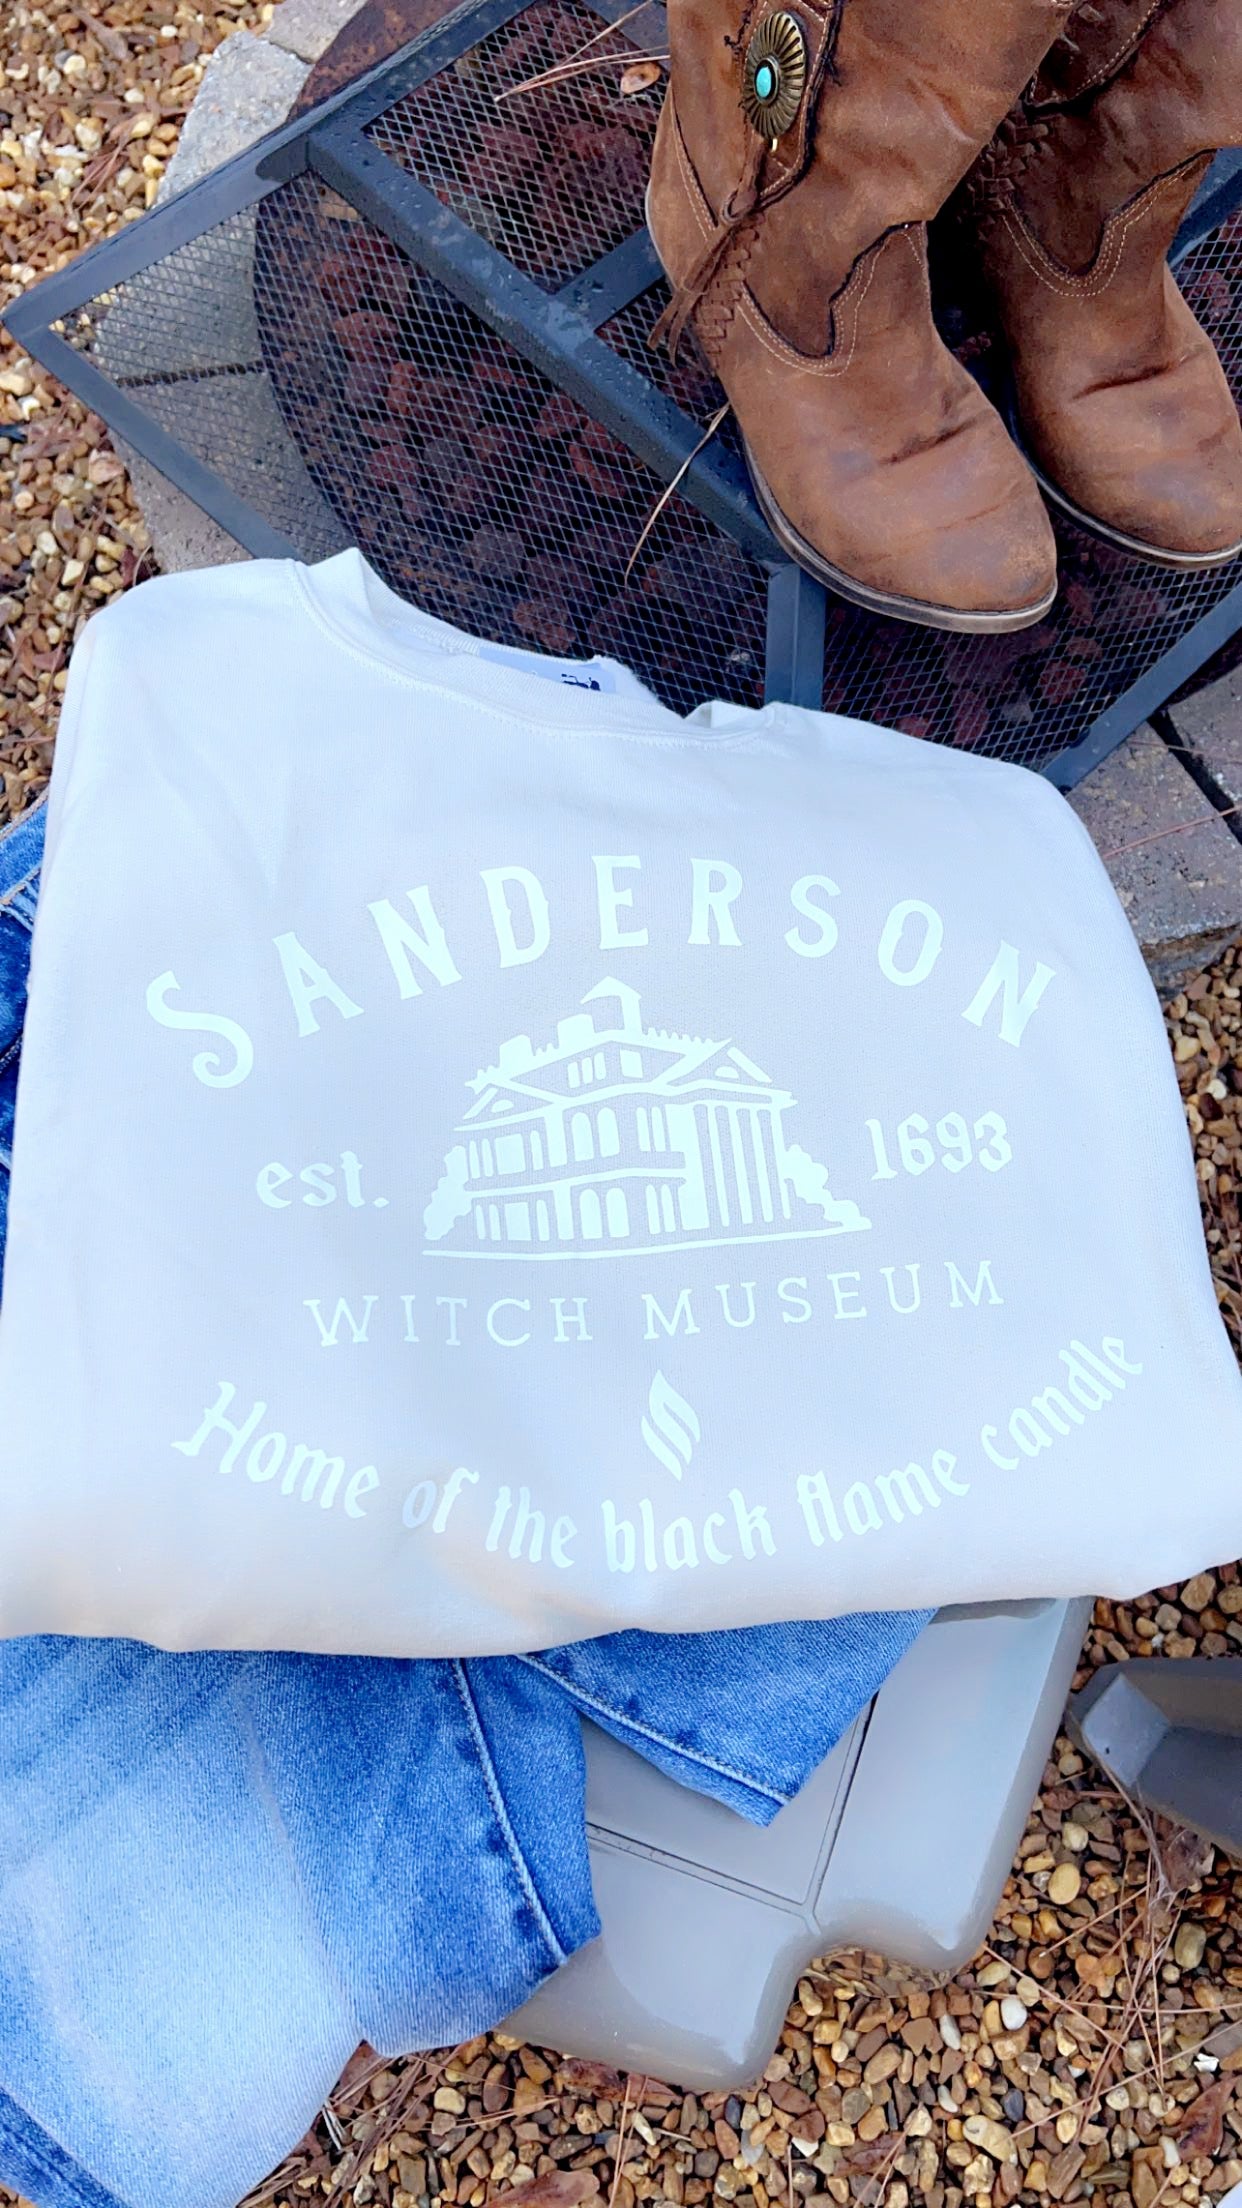 Sanderson Sisters Sweatshirt